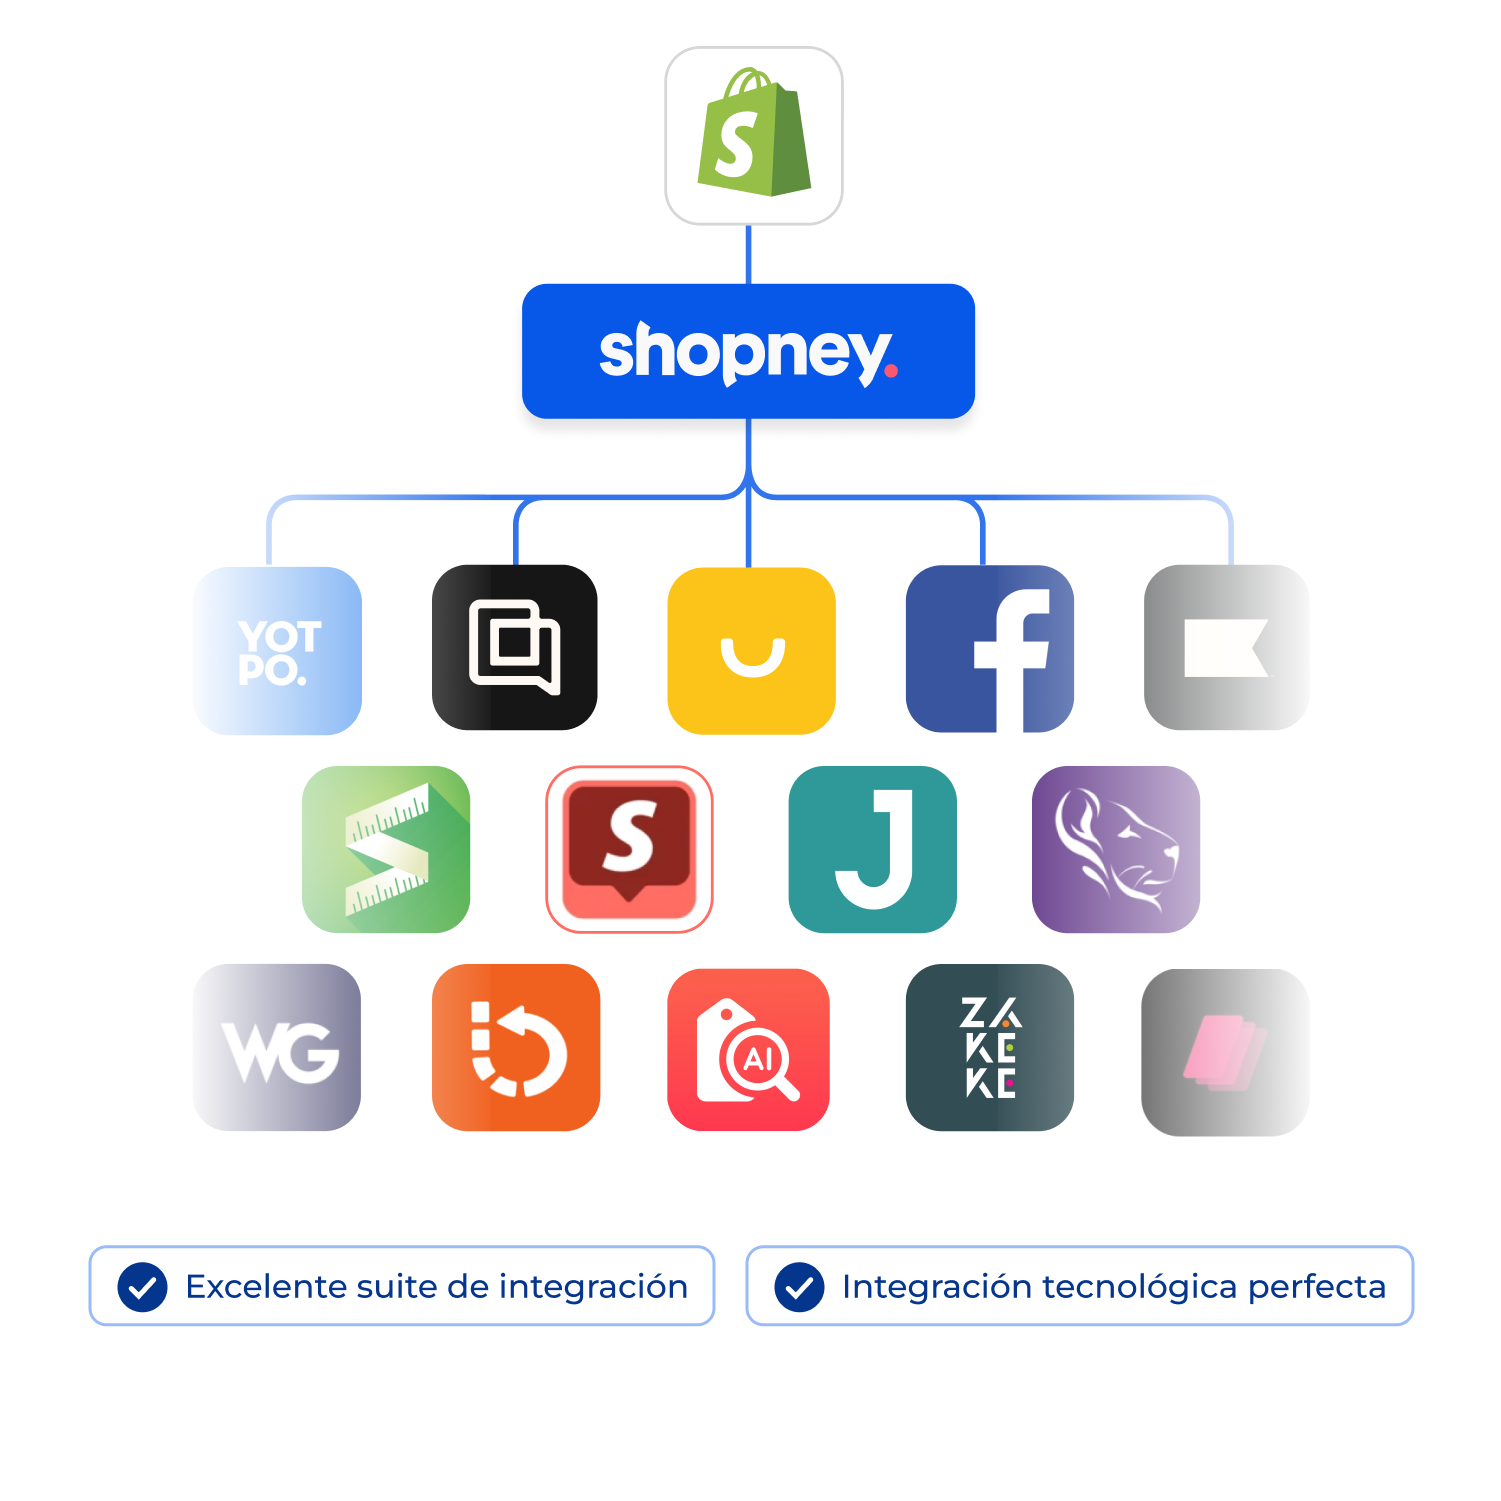 Aplicaciones de Shopify integradas con Shopney